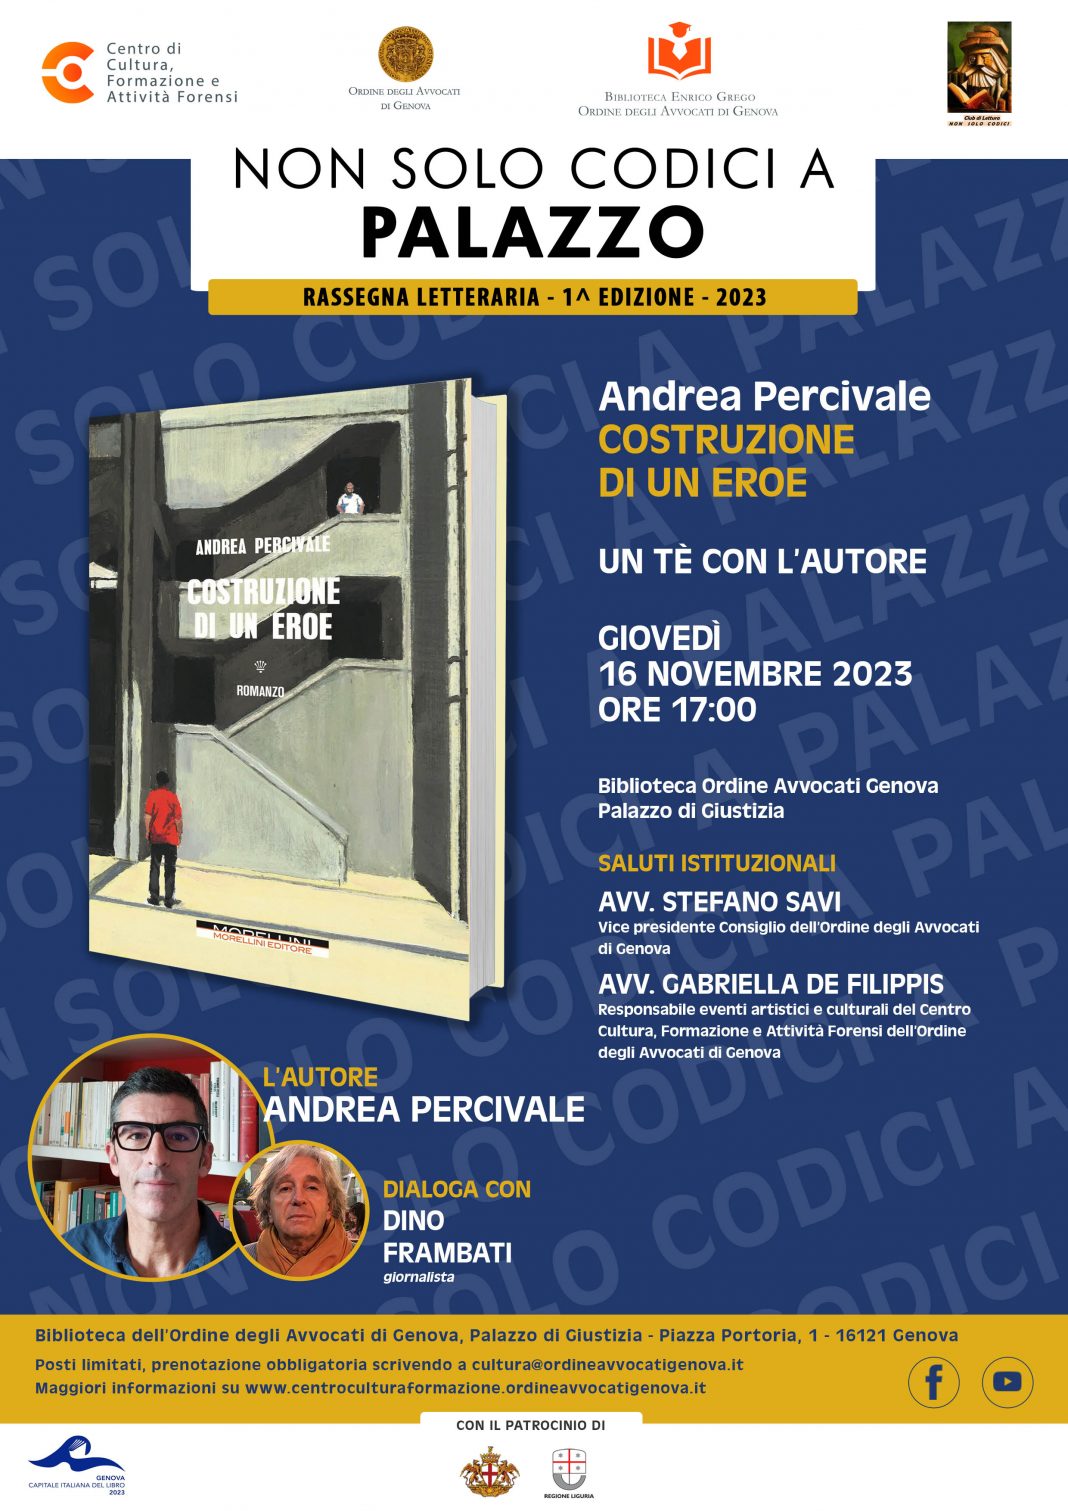 Non solo Codici a Palazzo – Un tè con l’autore Andrea Percivalehttps://www.exibart.com/repository/media/formidable/11/img/0e4/Non-solo-codici-a-Palazzo-16-novembre-Andrea-Percivale-1068x1511.jpg